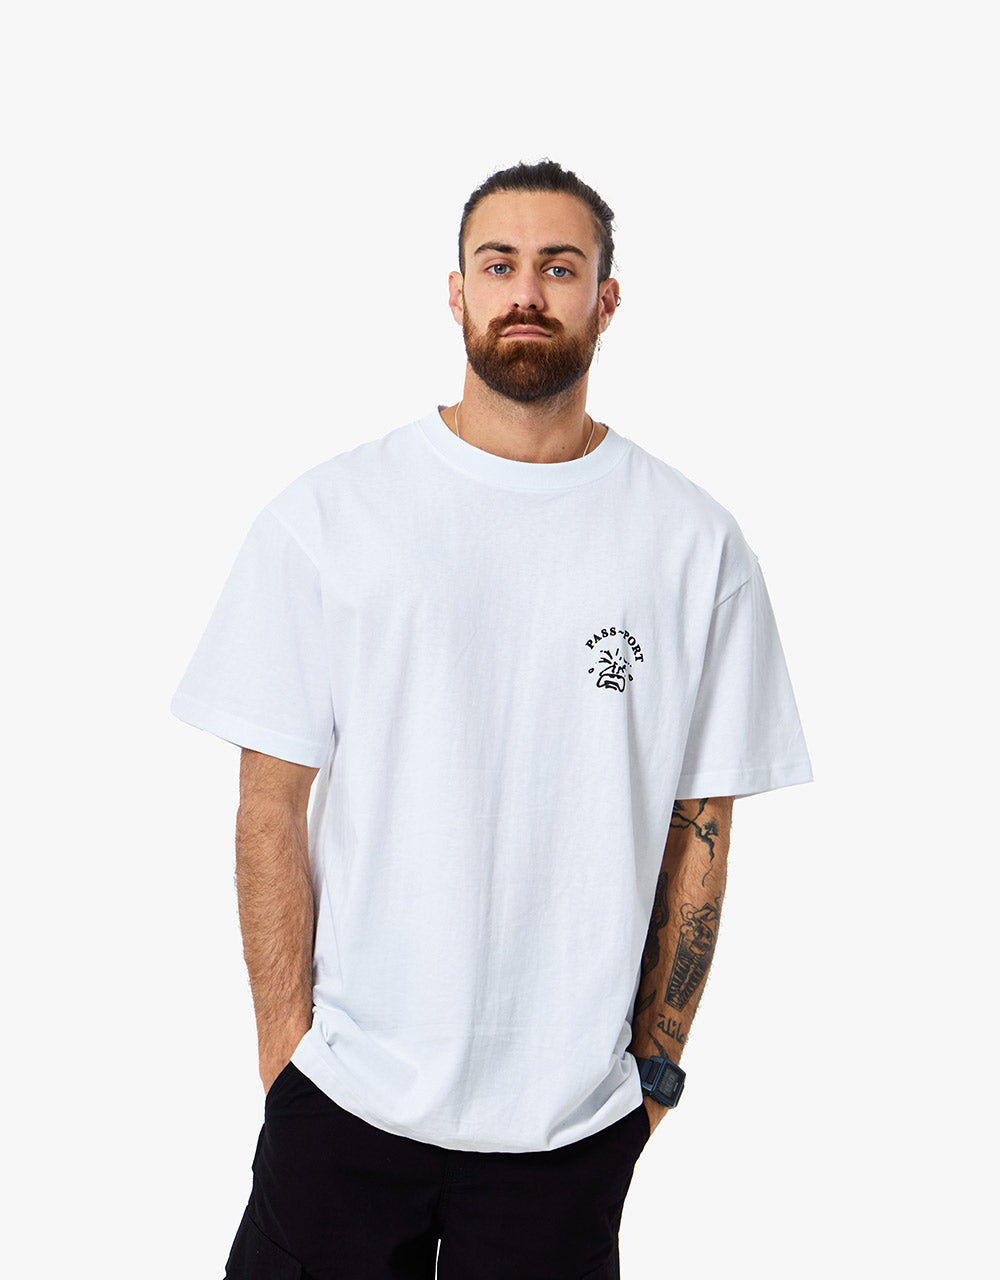 Pass Port Tile T-Shirt - White